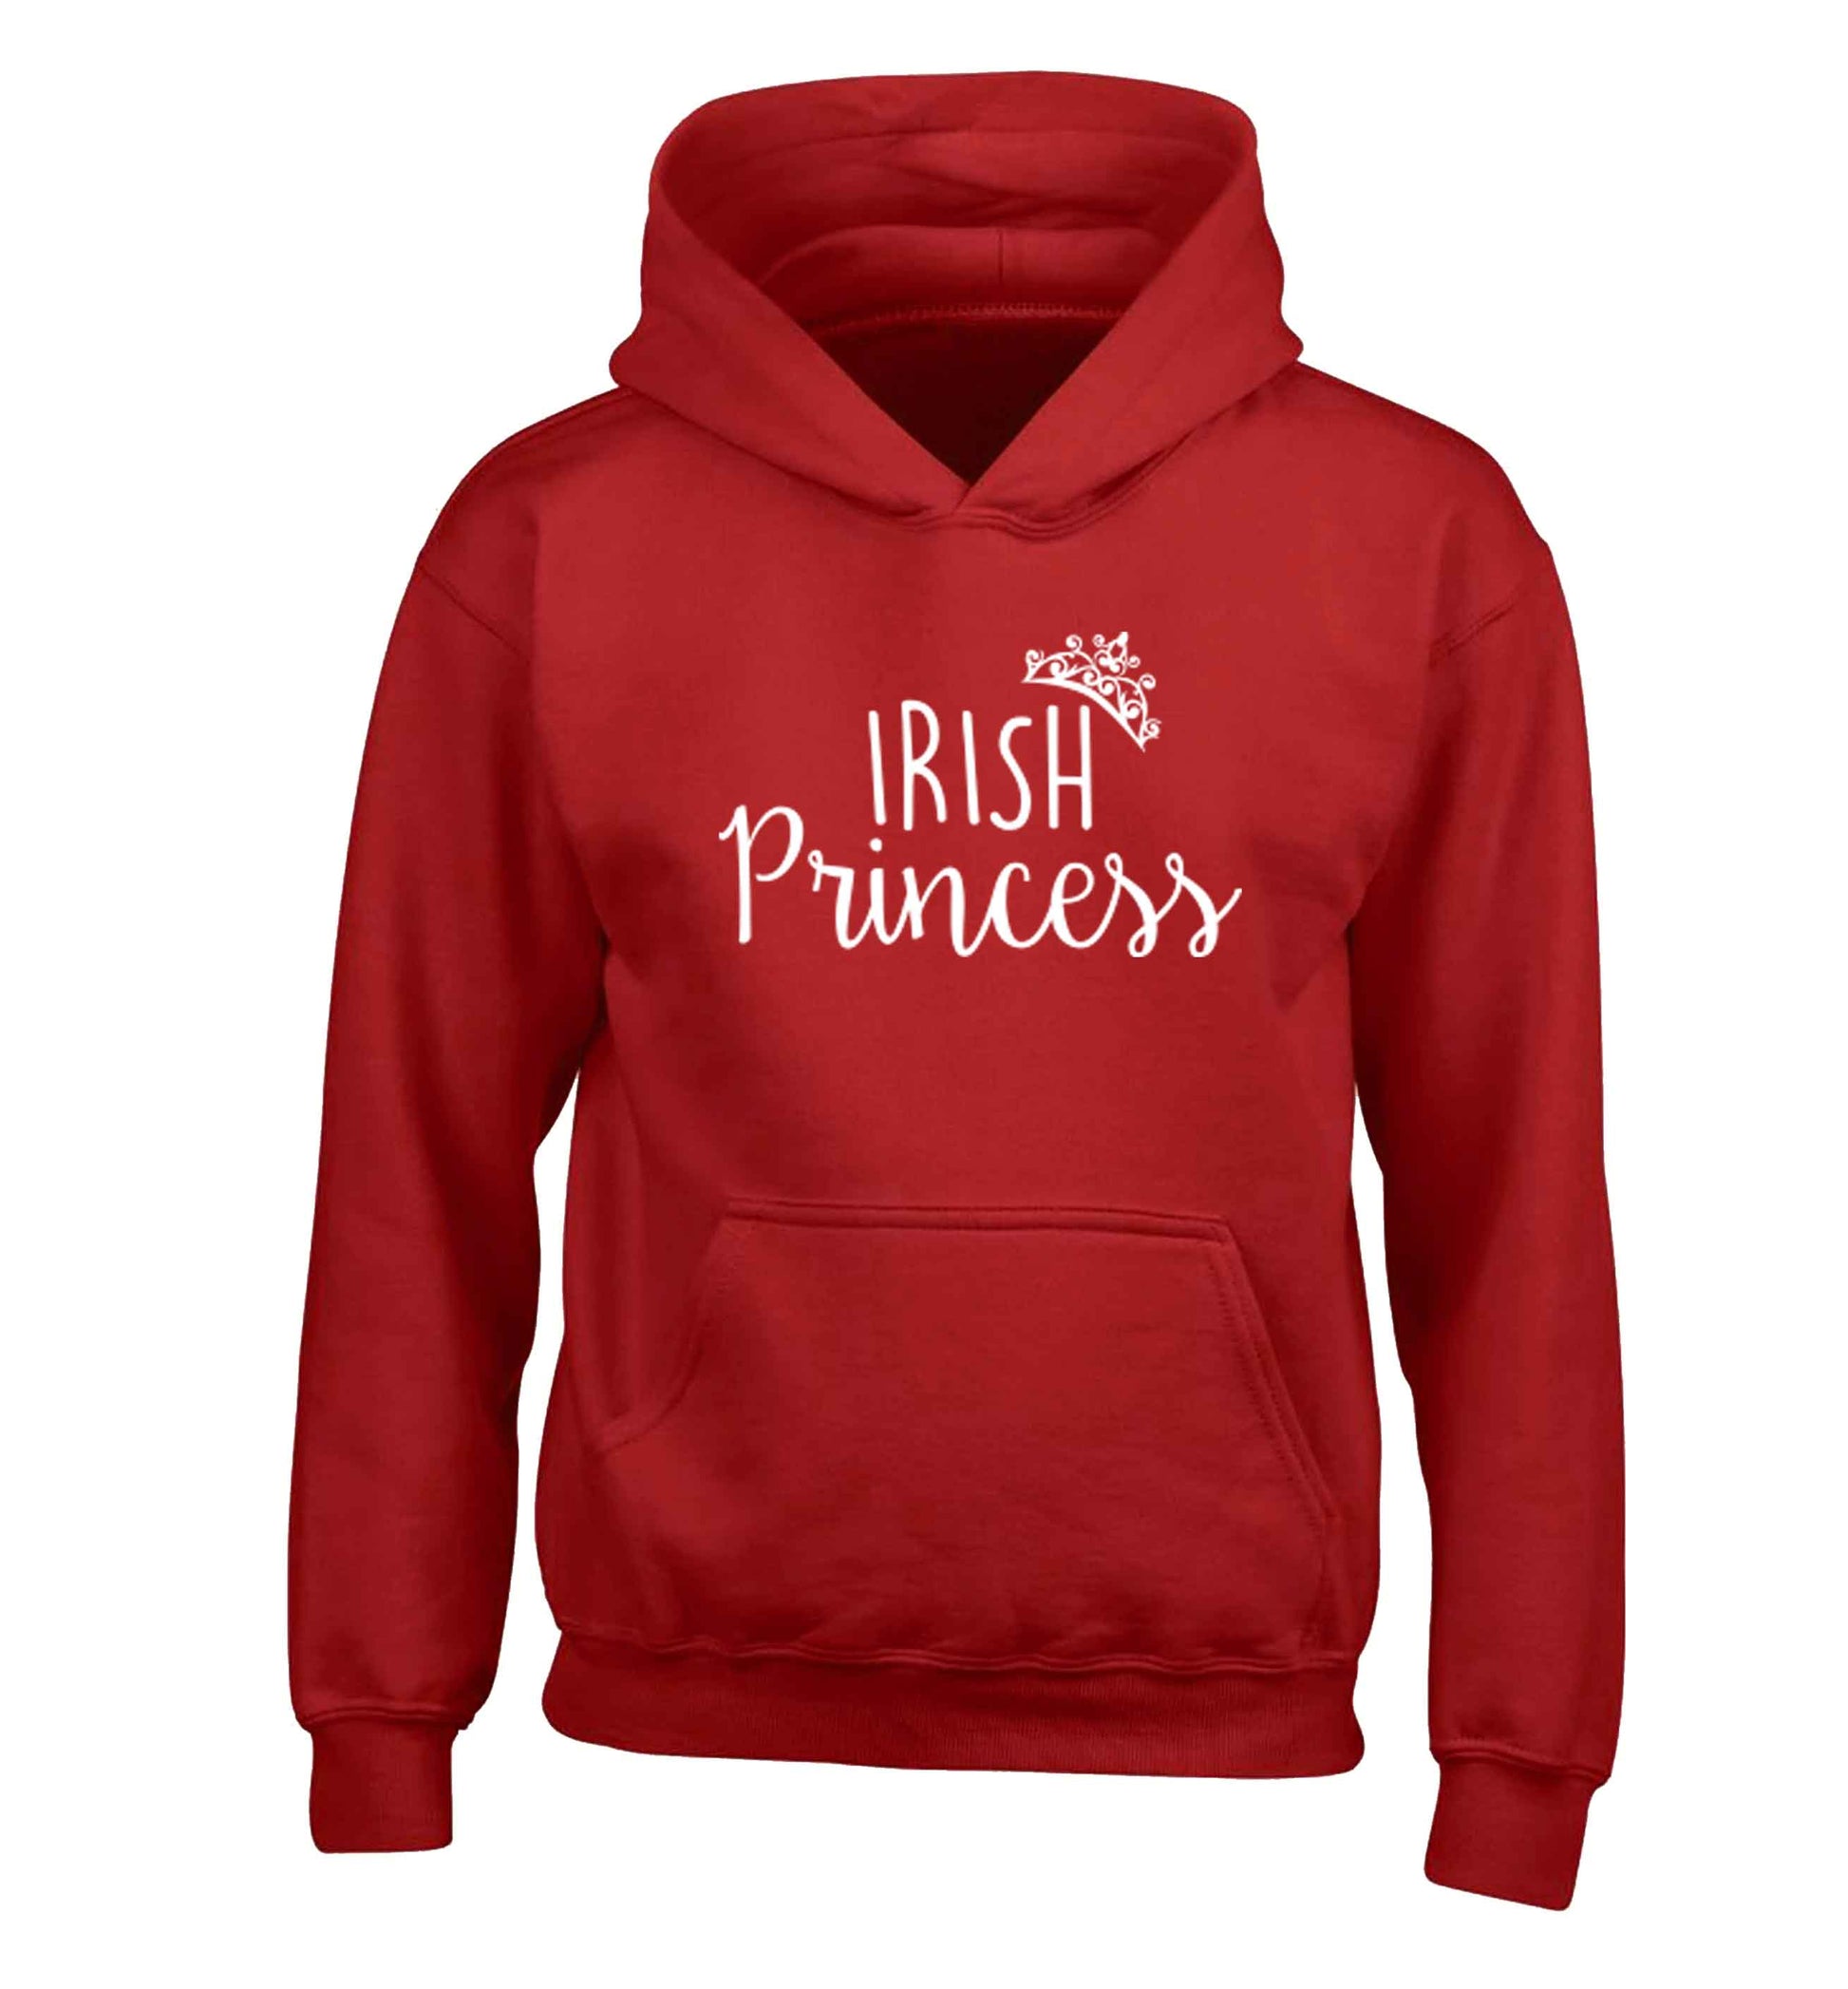 Irish princess children's red hoodie 12-13 Years